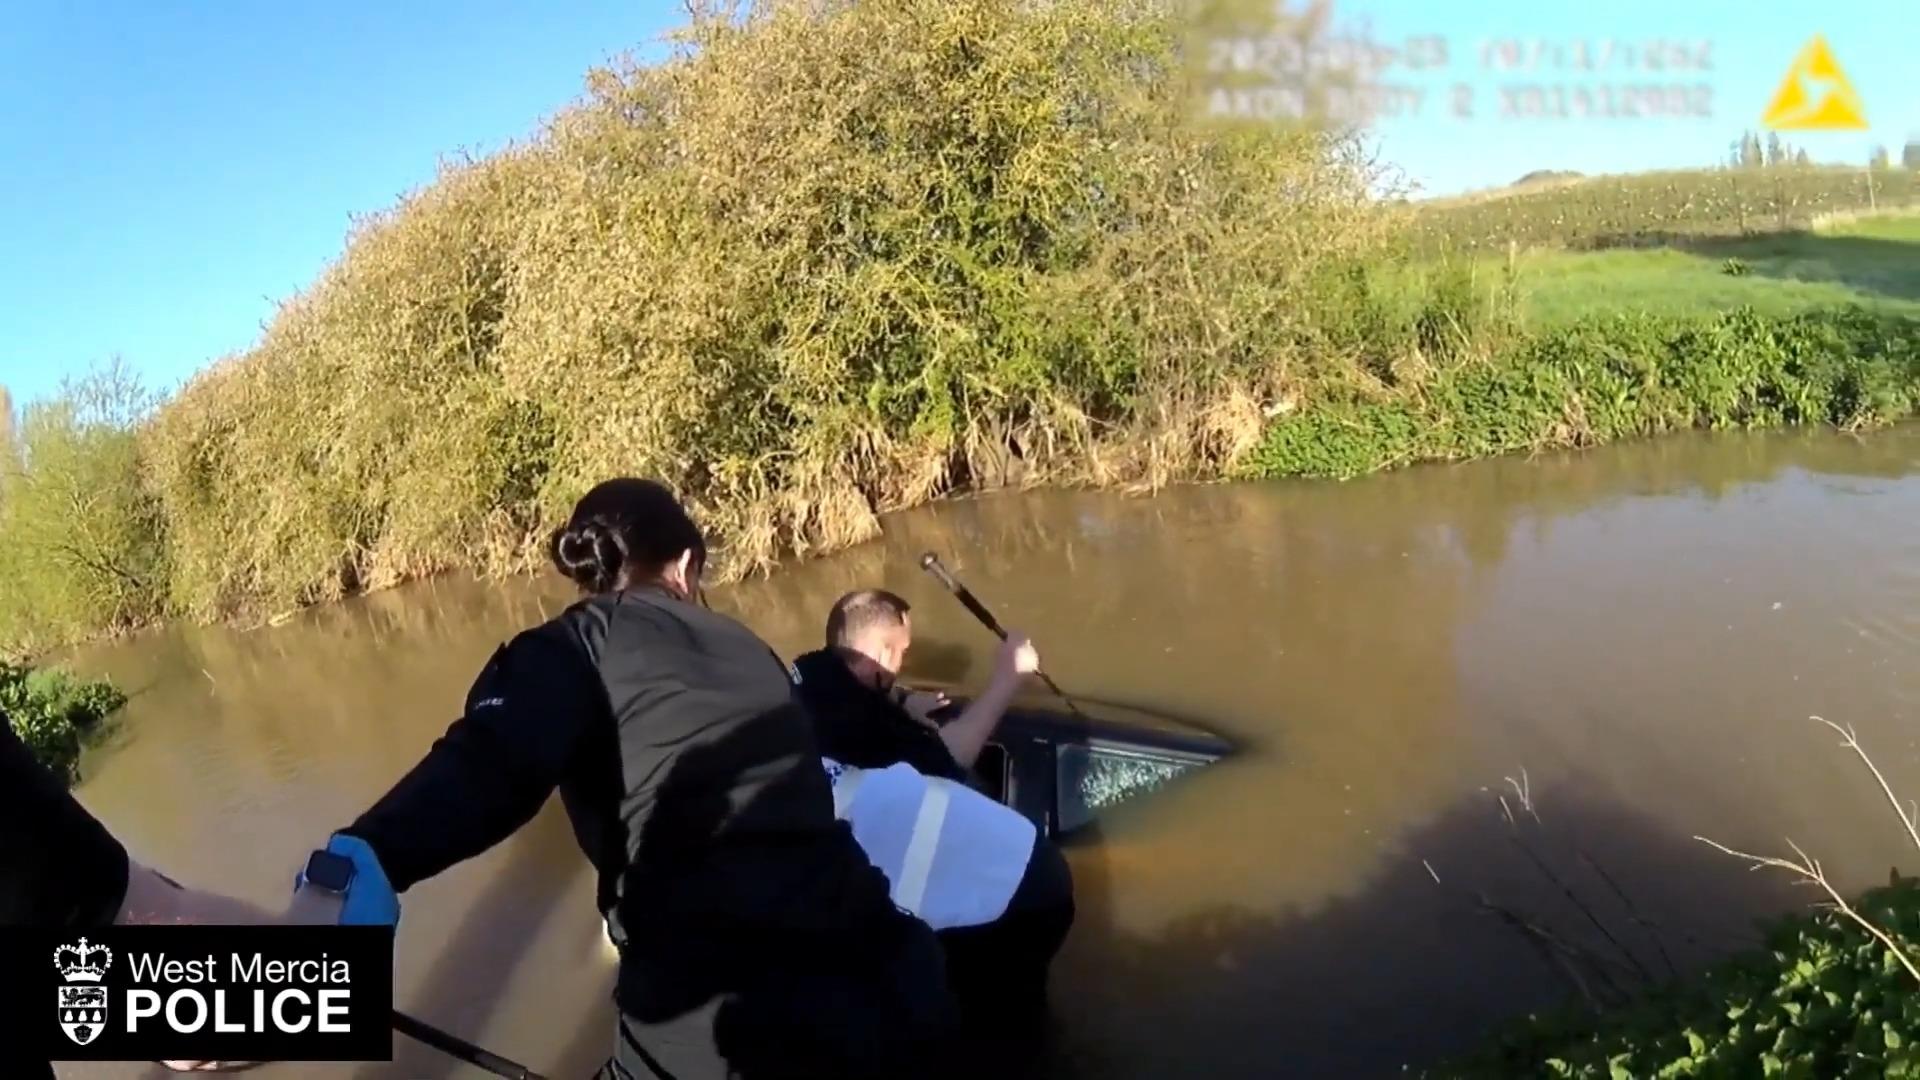 Polizisten retten Frau aus Fluss mit Menschenkette Auto im Wasser